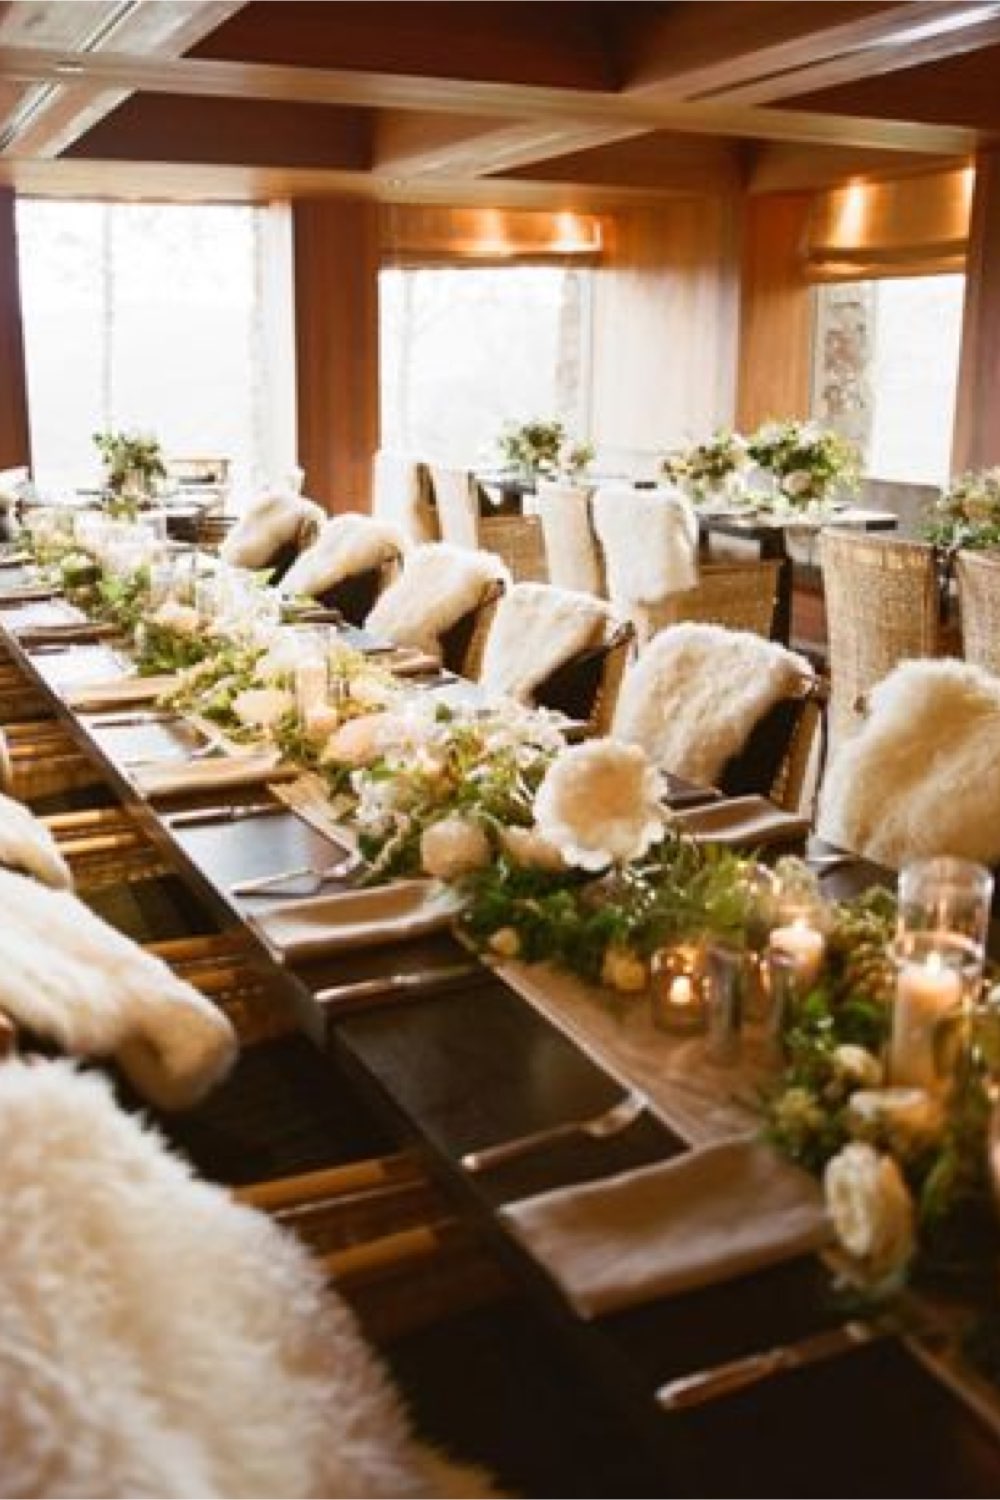 decoration mariage feerie hiver peau de mouton posée sur les chaise en bois chemin de table fleur blanche esprit chalet de montagne